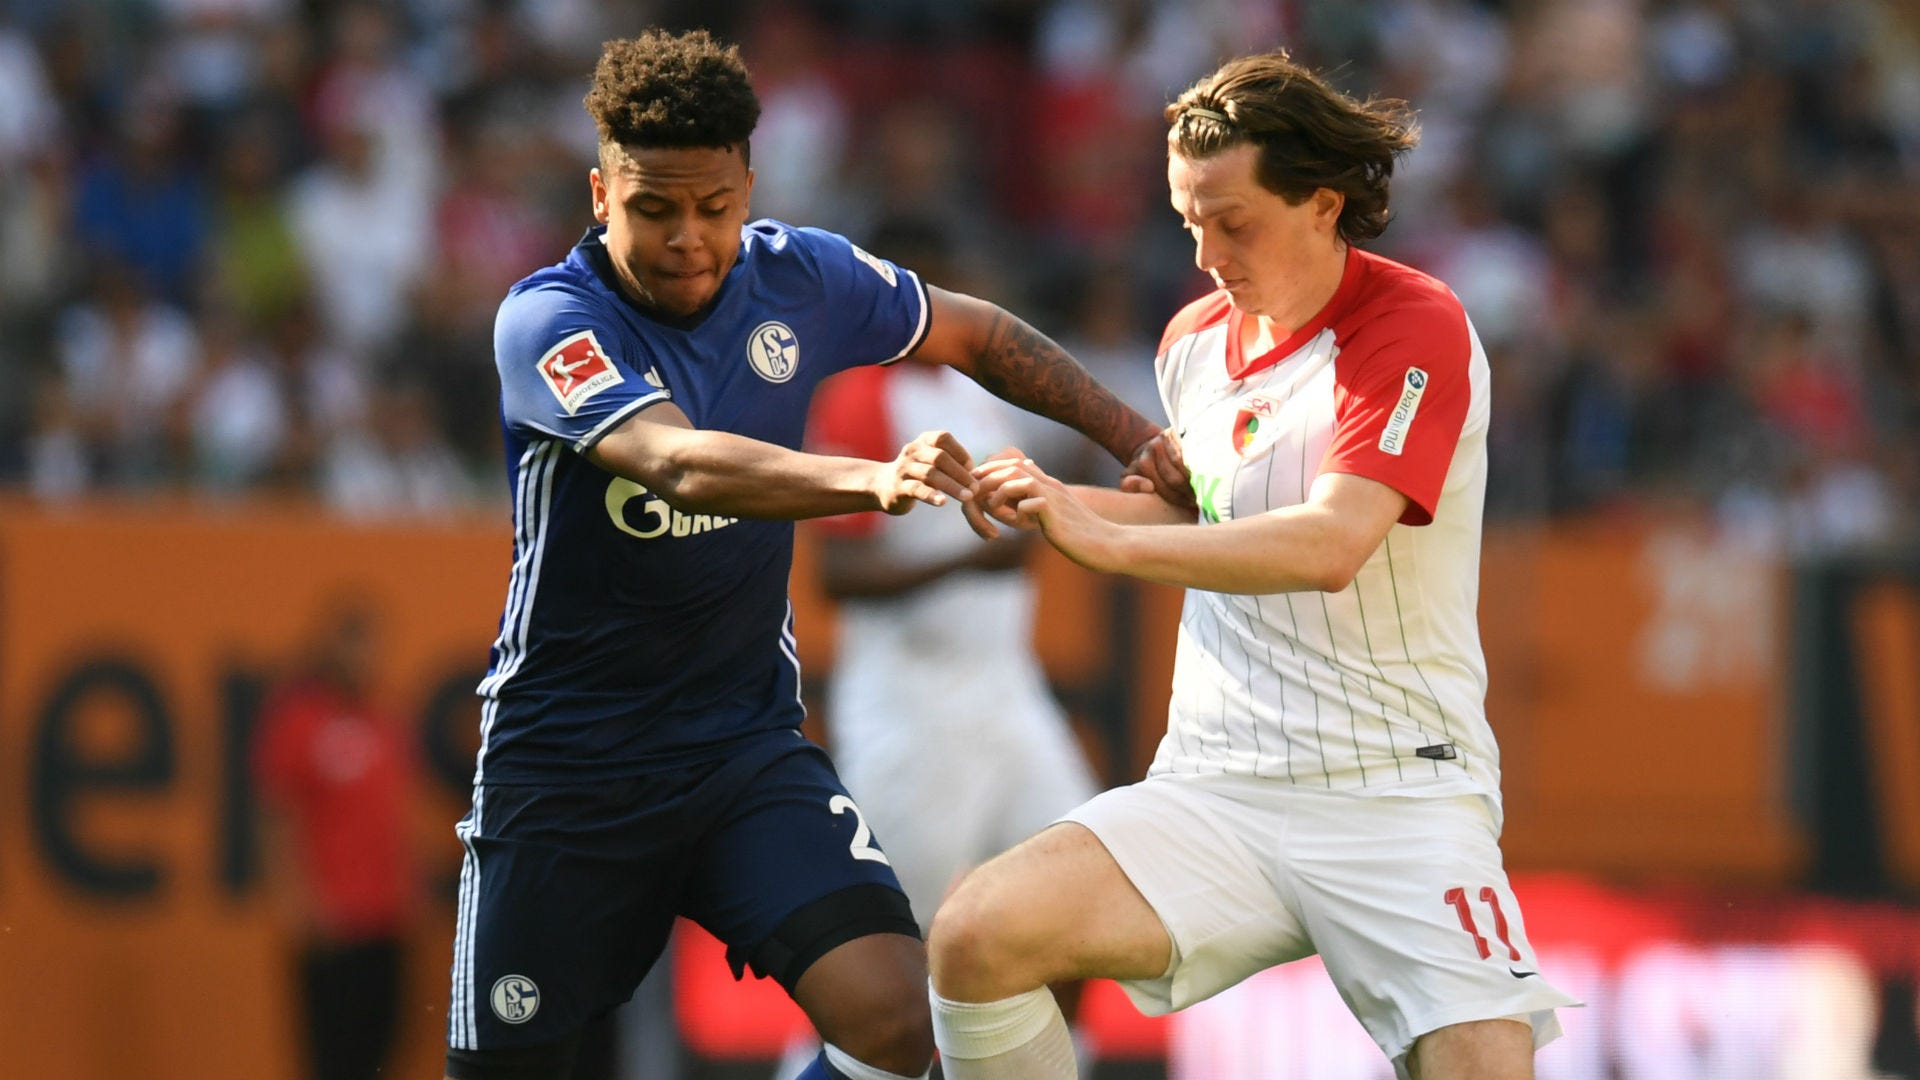 Smidighed Thicken styrte Schalke 04 gegen Augsburg heute im LIVE-STREAM und TV schauen: So geht's |  Goal.com Deutschland